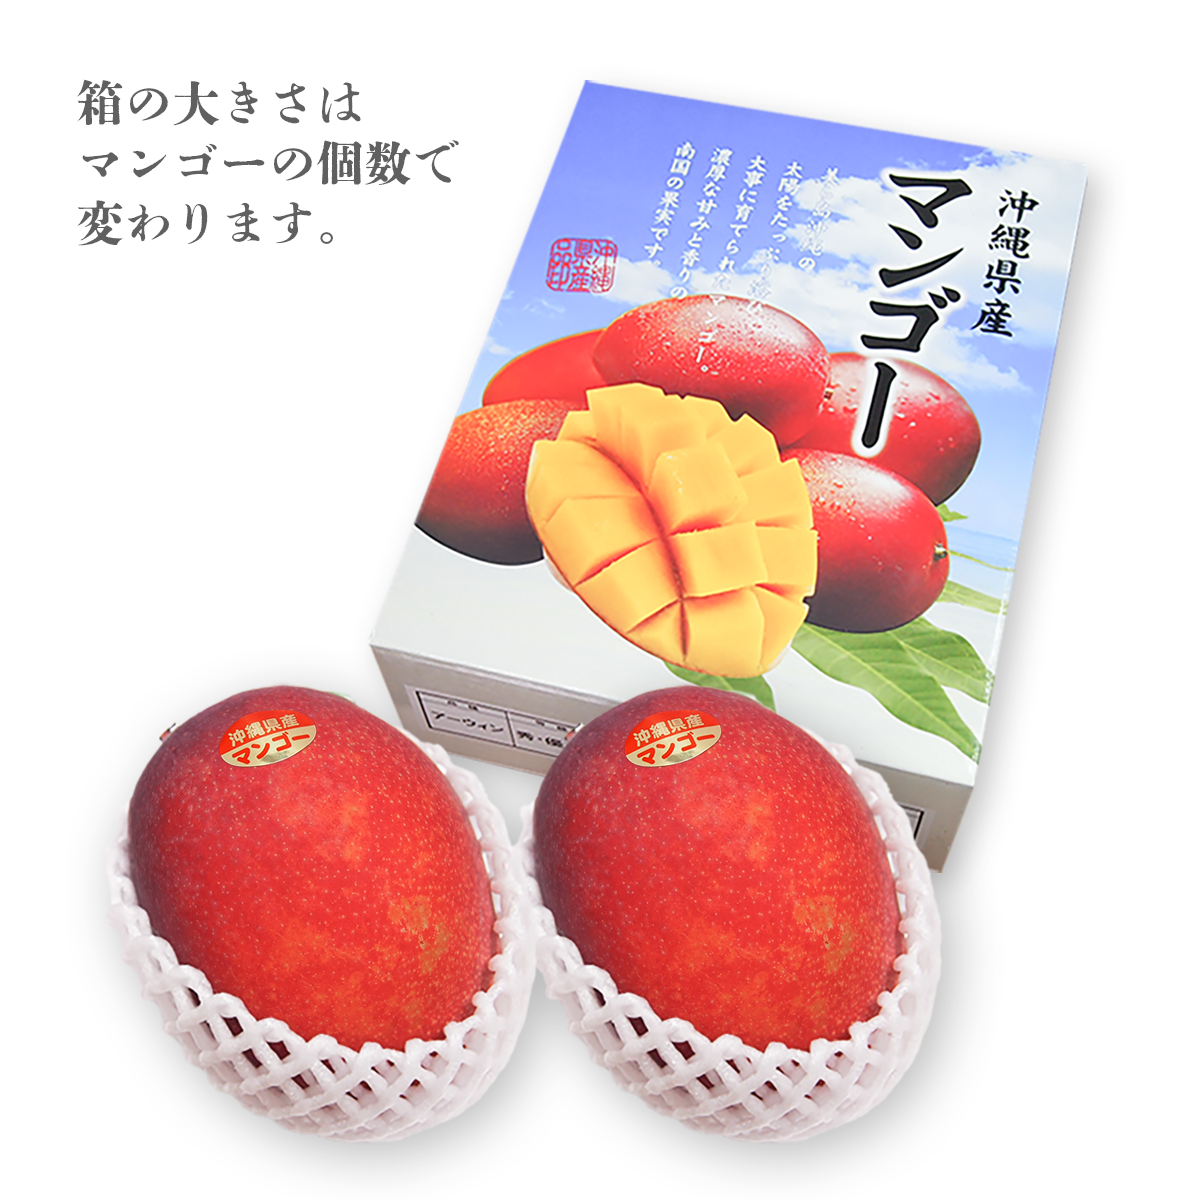 『予約商品』 南の果実園のアップルマンゴー 【B品】